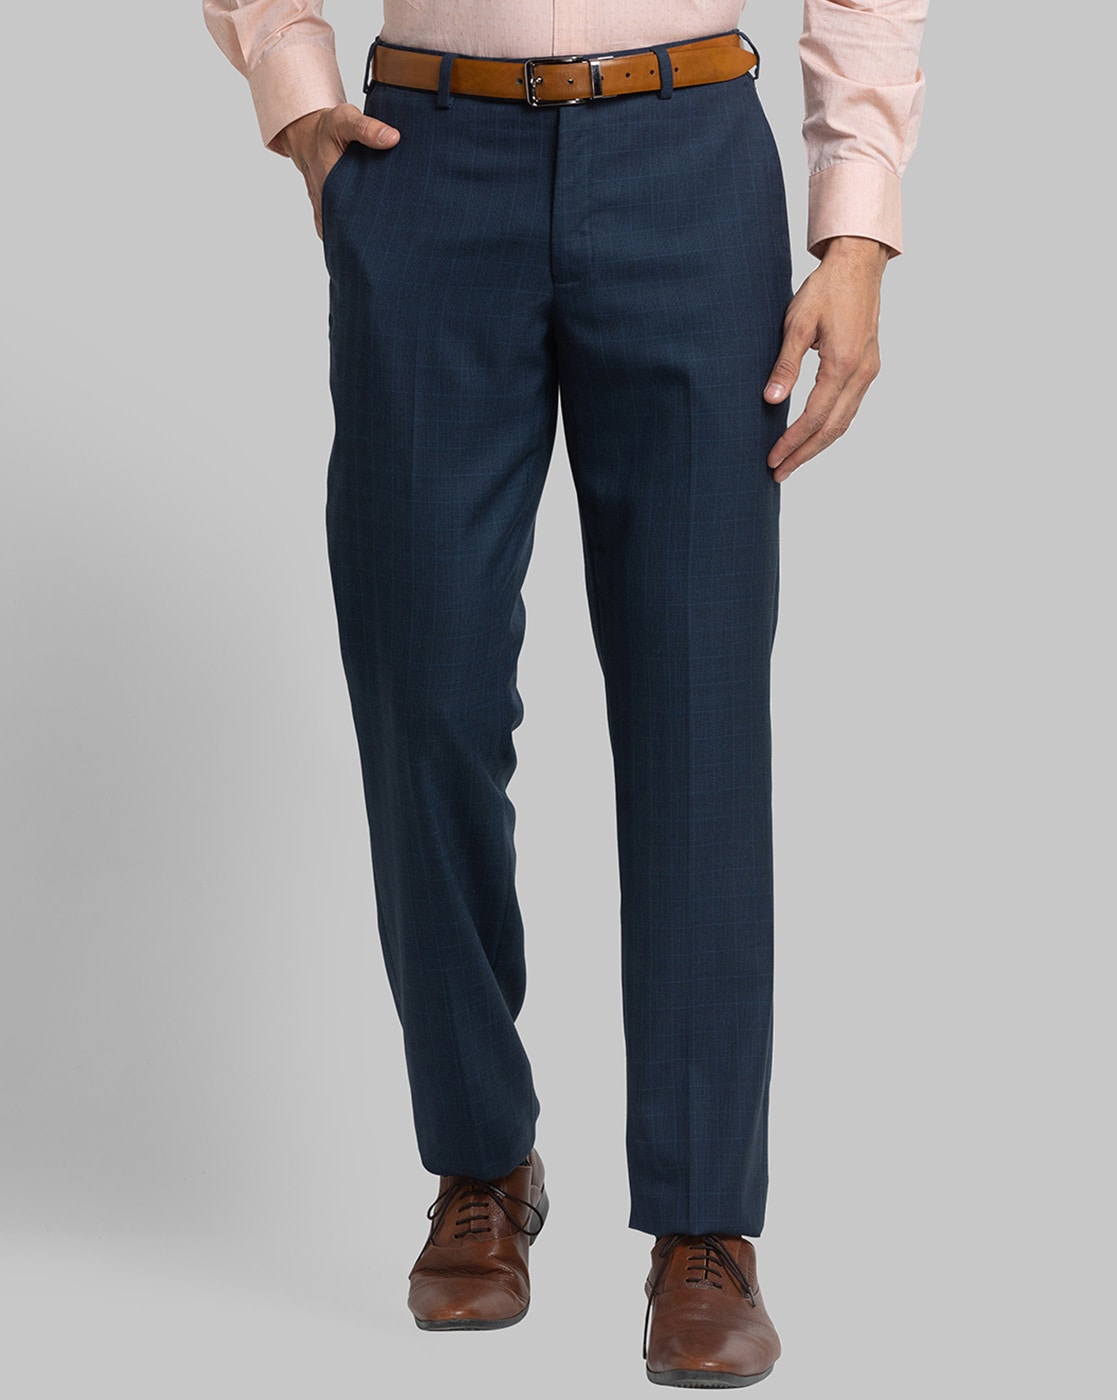 Buy Khaki Trousers & Pants for Men by PARK AVENUE Online | Ajio.com